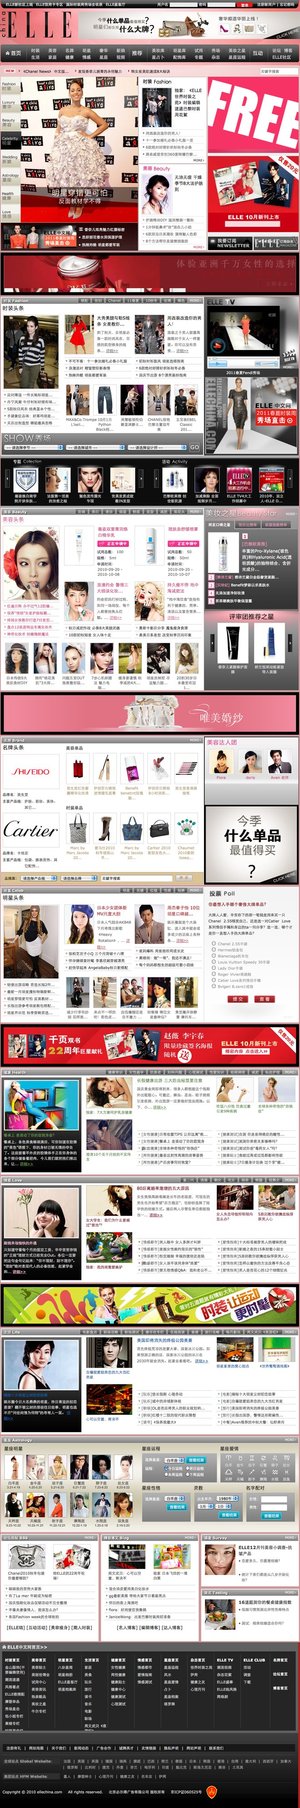 ELLE China website